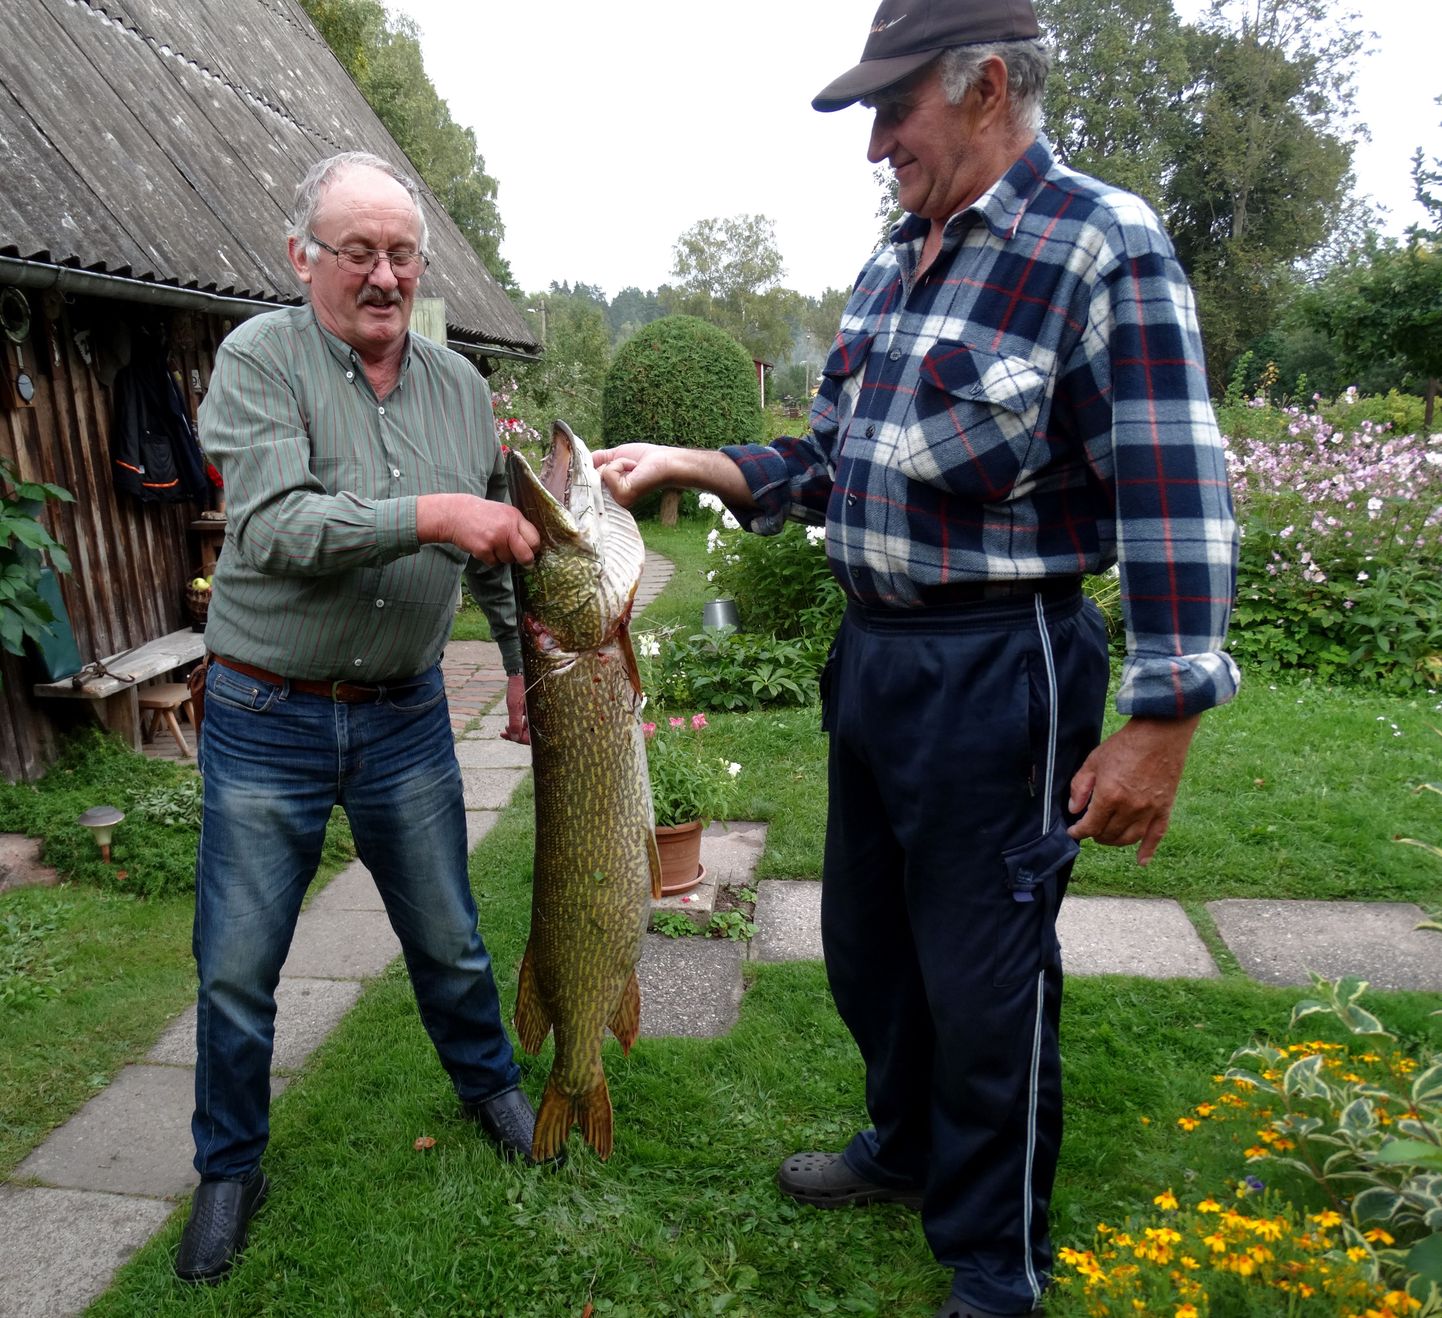 «Ma pole elus enne nii suurt kala oma silmaga näinud, ammugi siis kätte saanud,» ütles õnnelik kalamees Arvo Kaldma (vasakul), kes koos sõbra Alfred Oherjusega tiigist suure havi välja tõmbas.